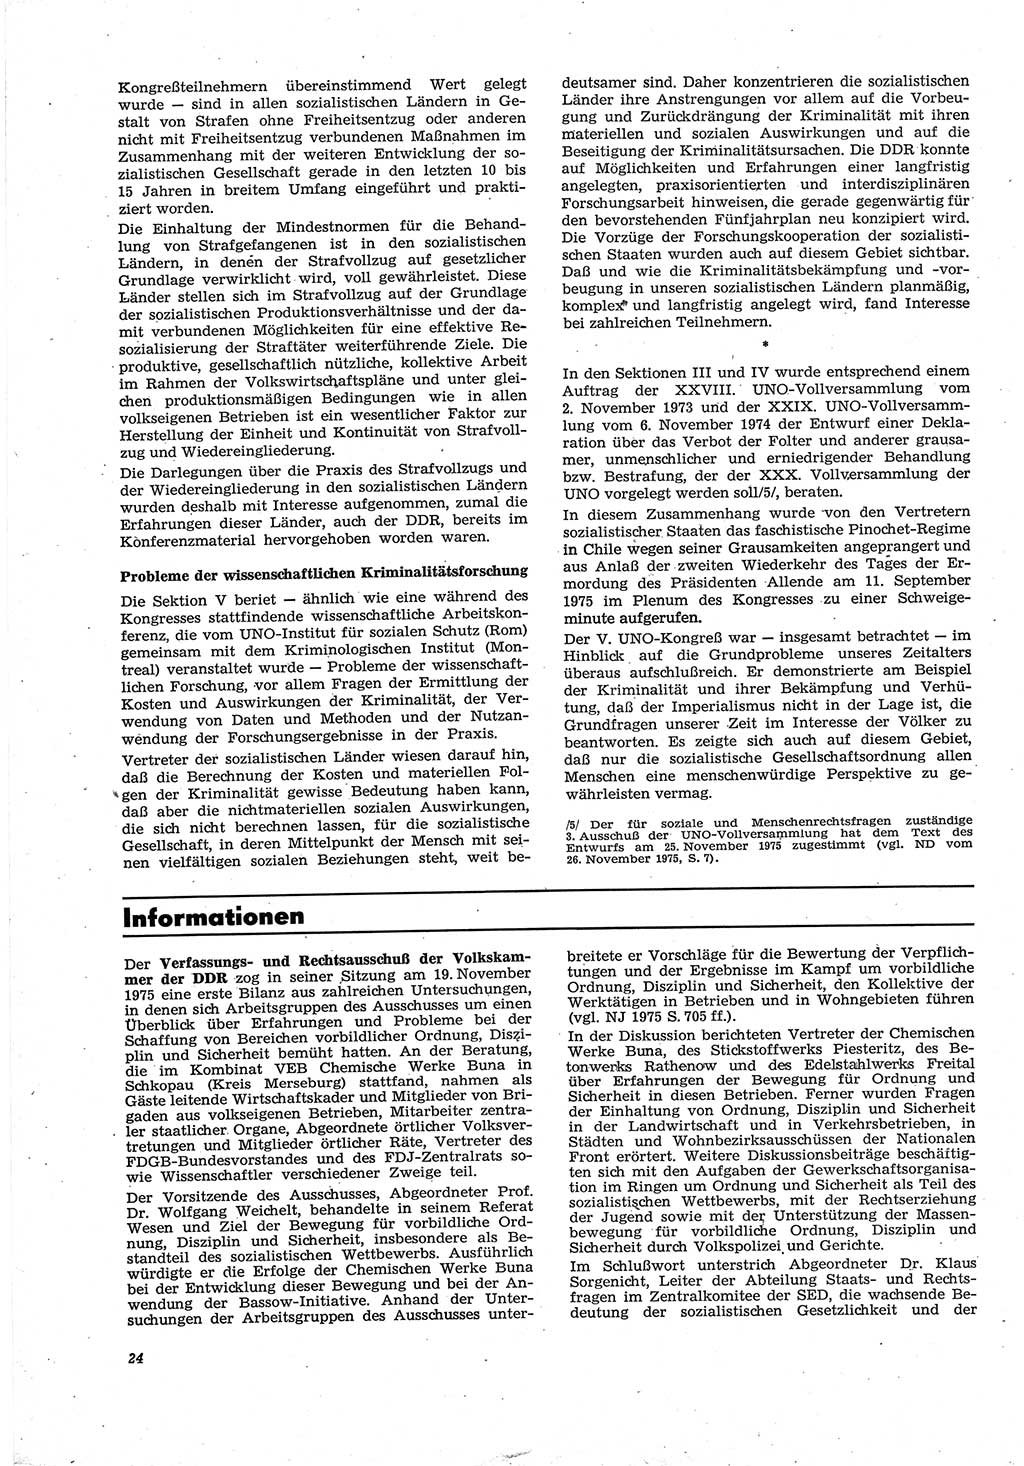 Neue Justiz (NJ), Zeitschrift für Recht und Rechtswissenschaft [Deutsche Demokratische Republik (DDR)], 30. Jahrgang 1976, Seite 24 (NJ DDR 1976, S. 24)